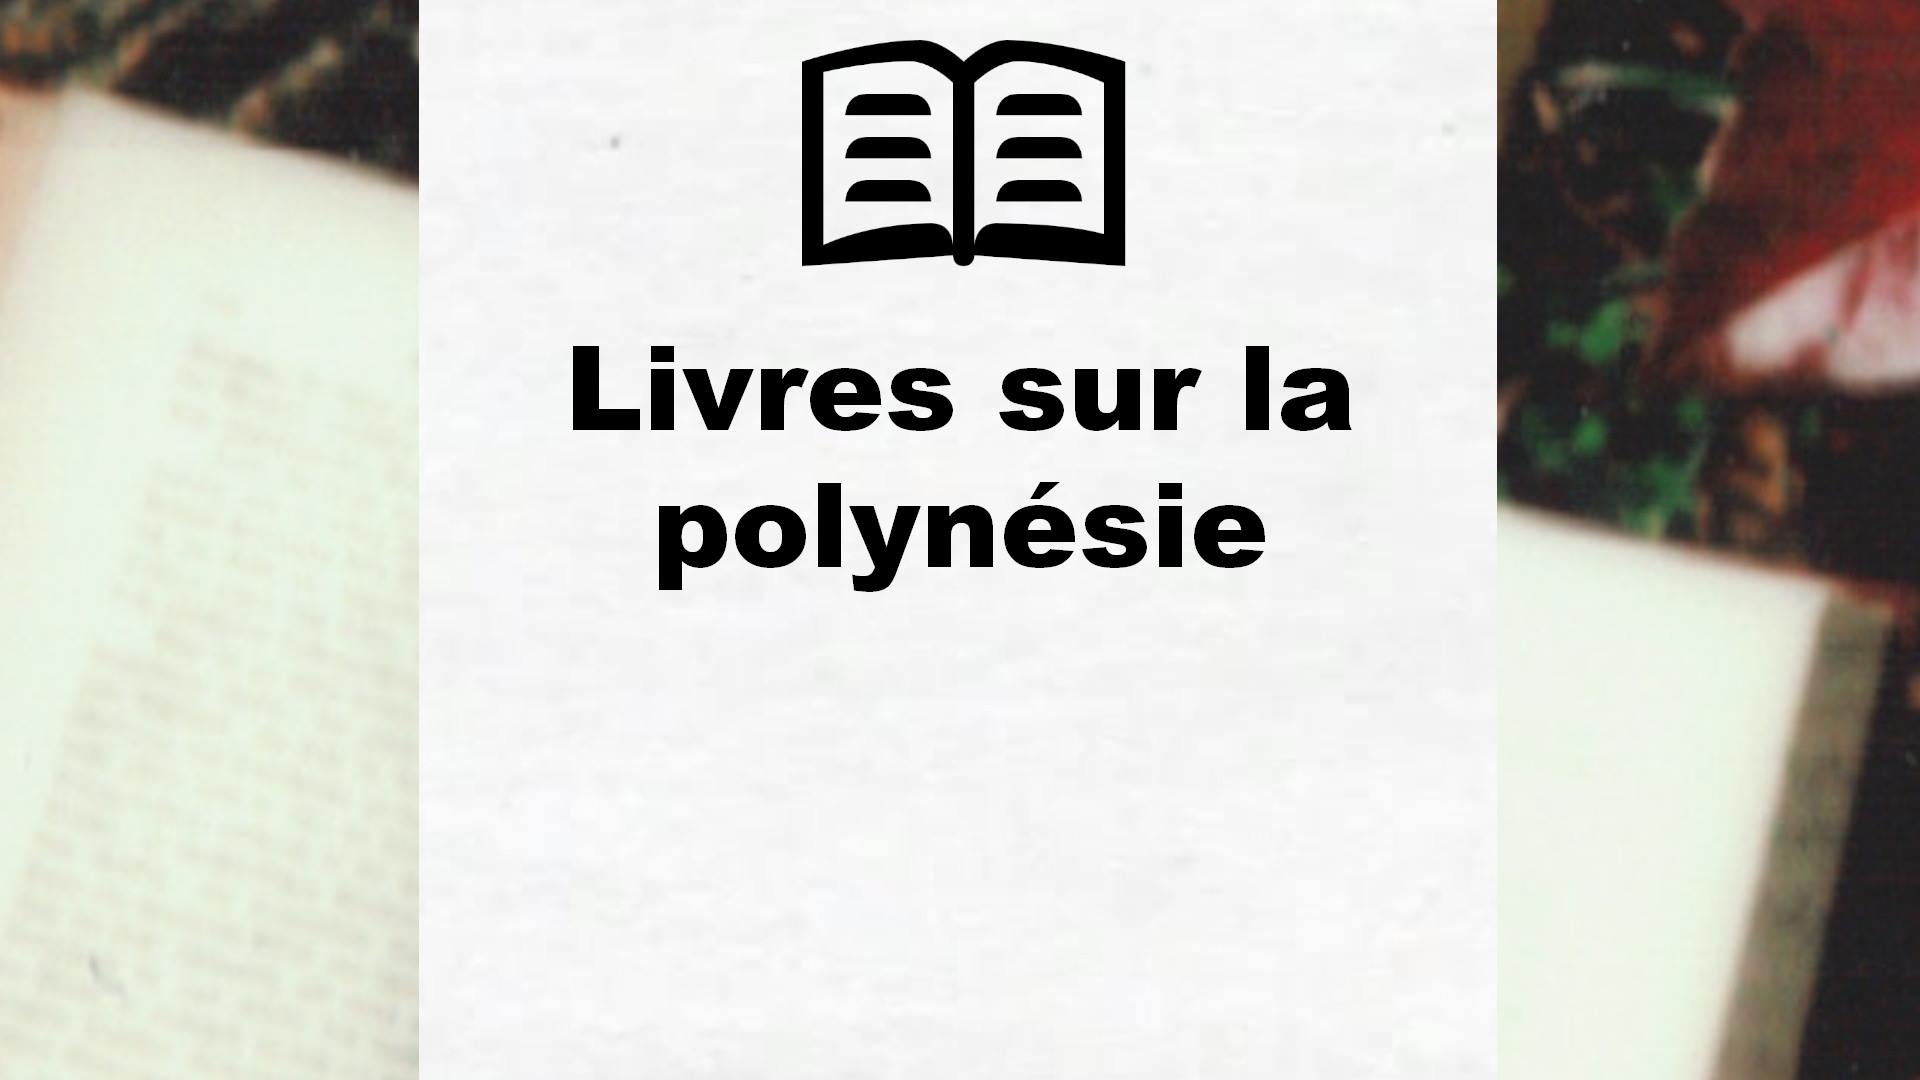 Livres sur la polynésie